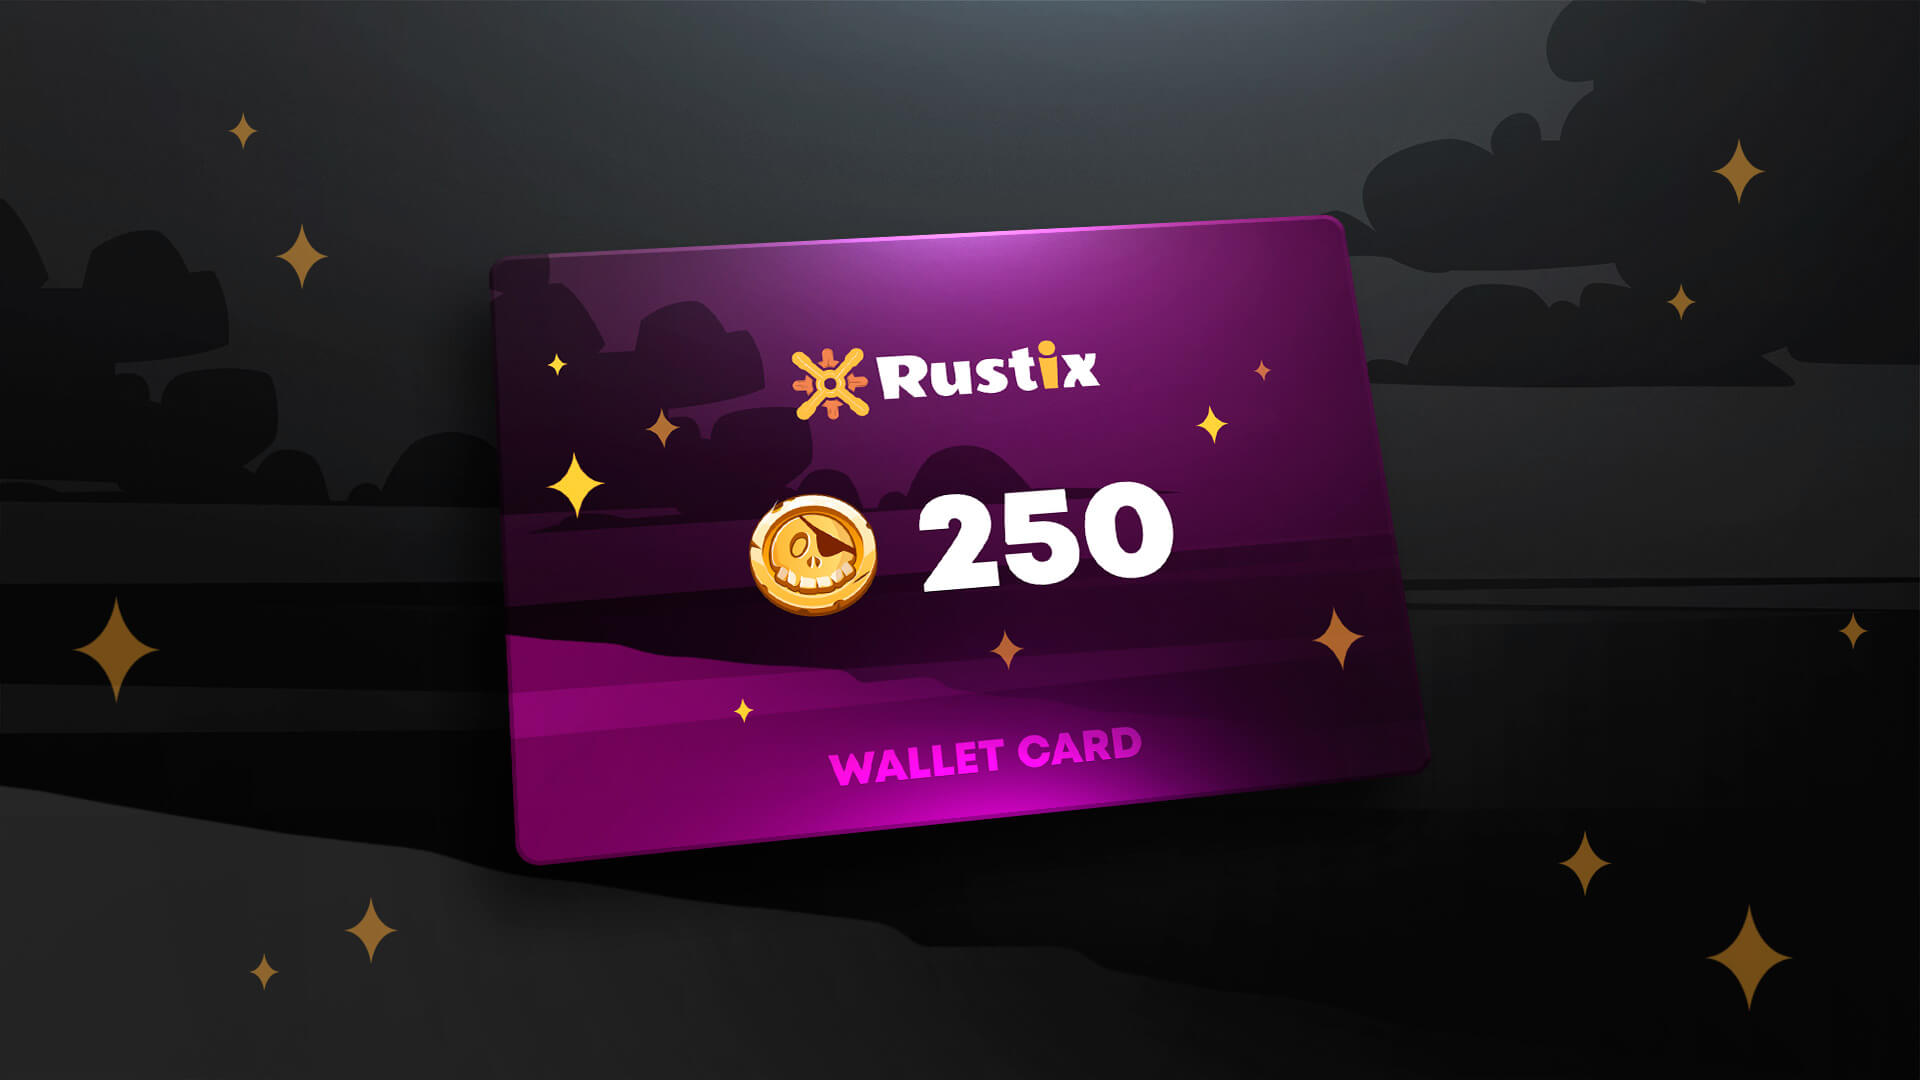 Rustix.io 250 USD Wallet Card Code 274.57$